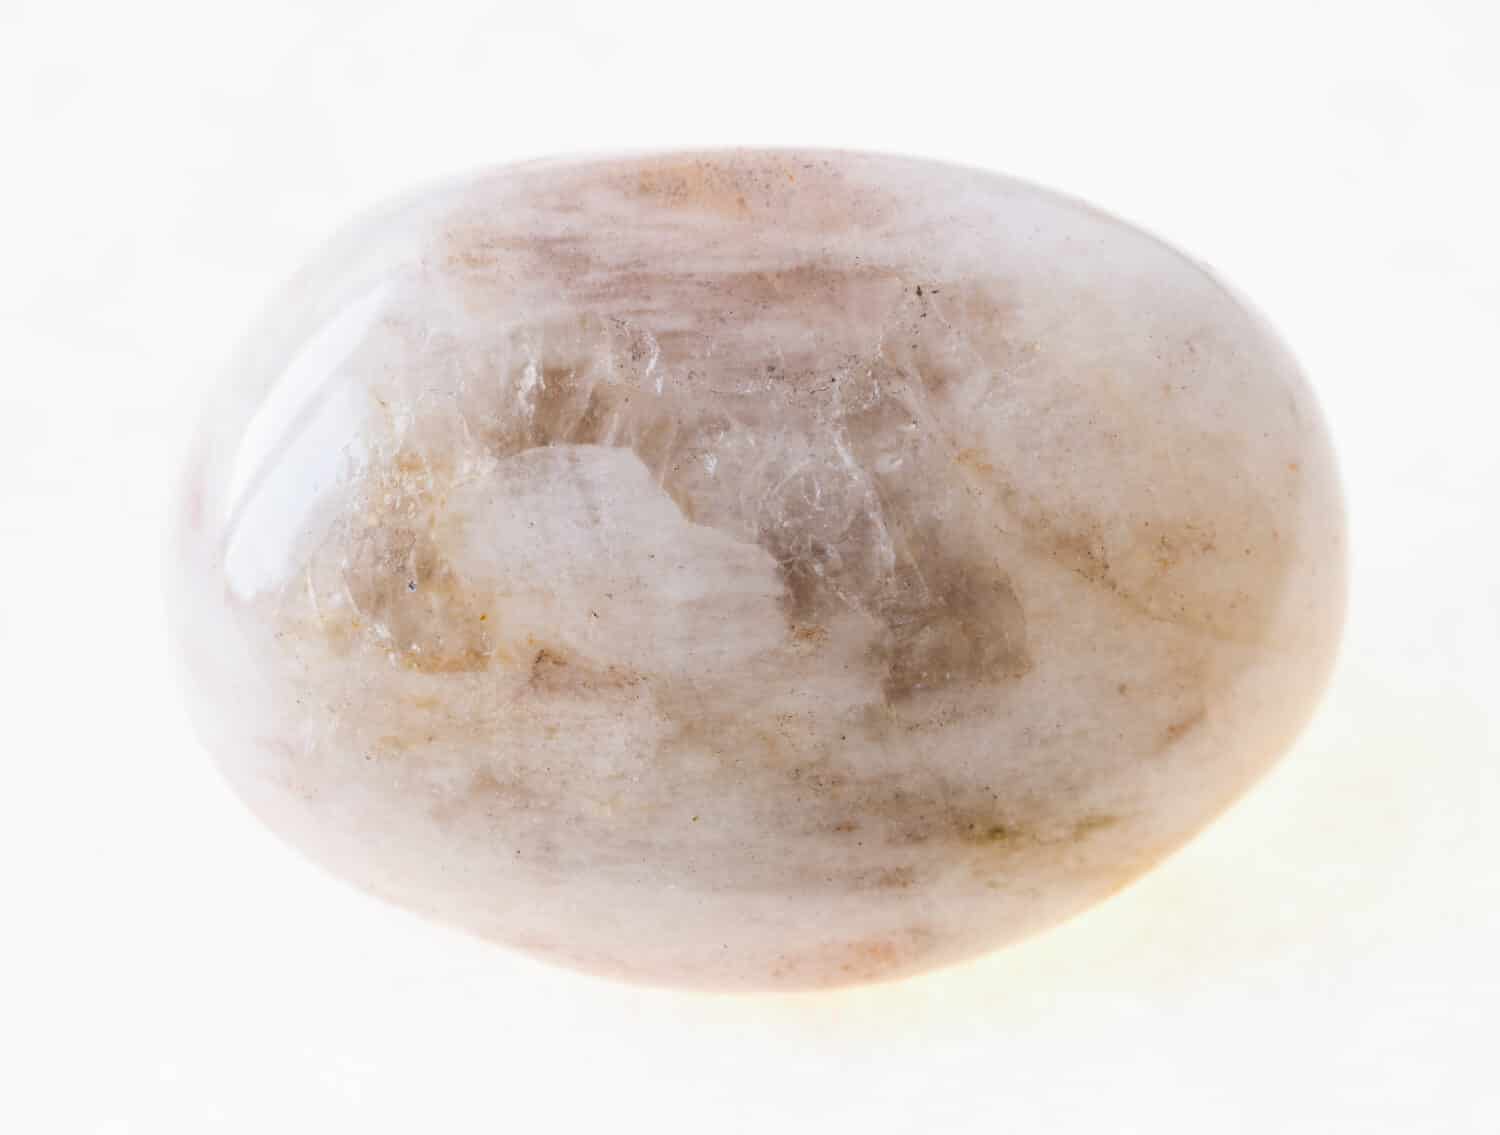 fotografia macro di minerali naturali della collezione geologica - pietra di albite (pietra lunare) burattata su sfondo bianco